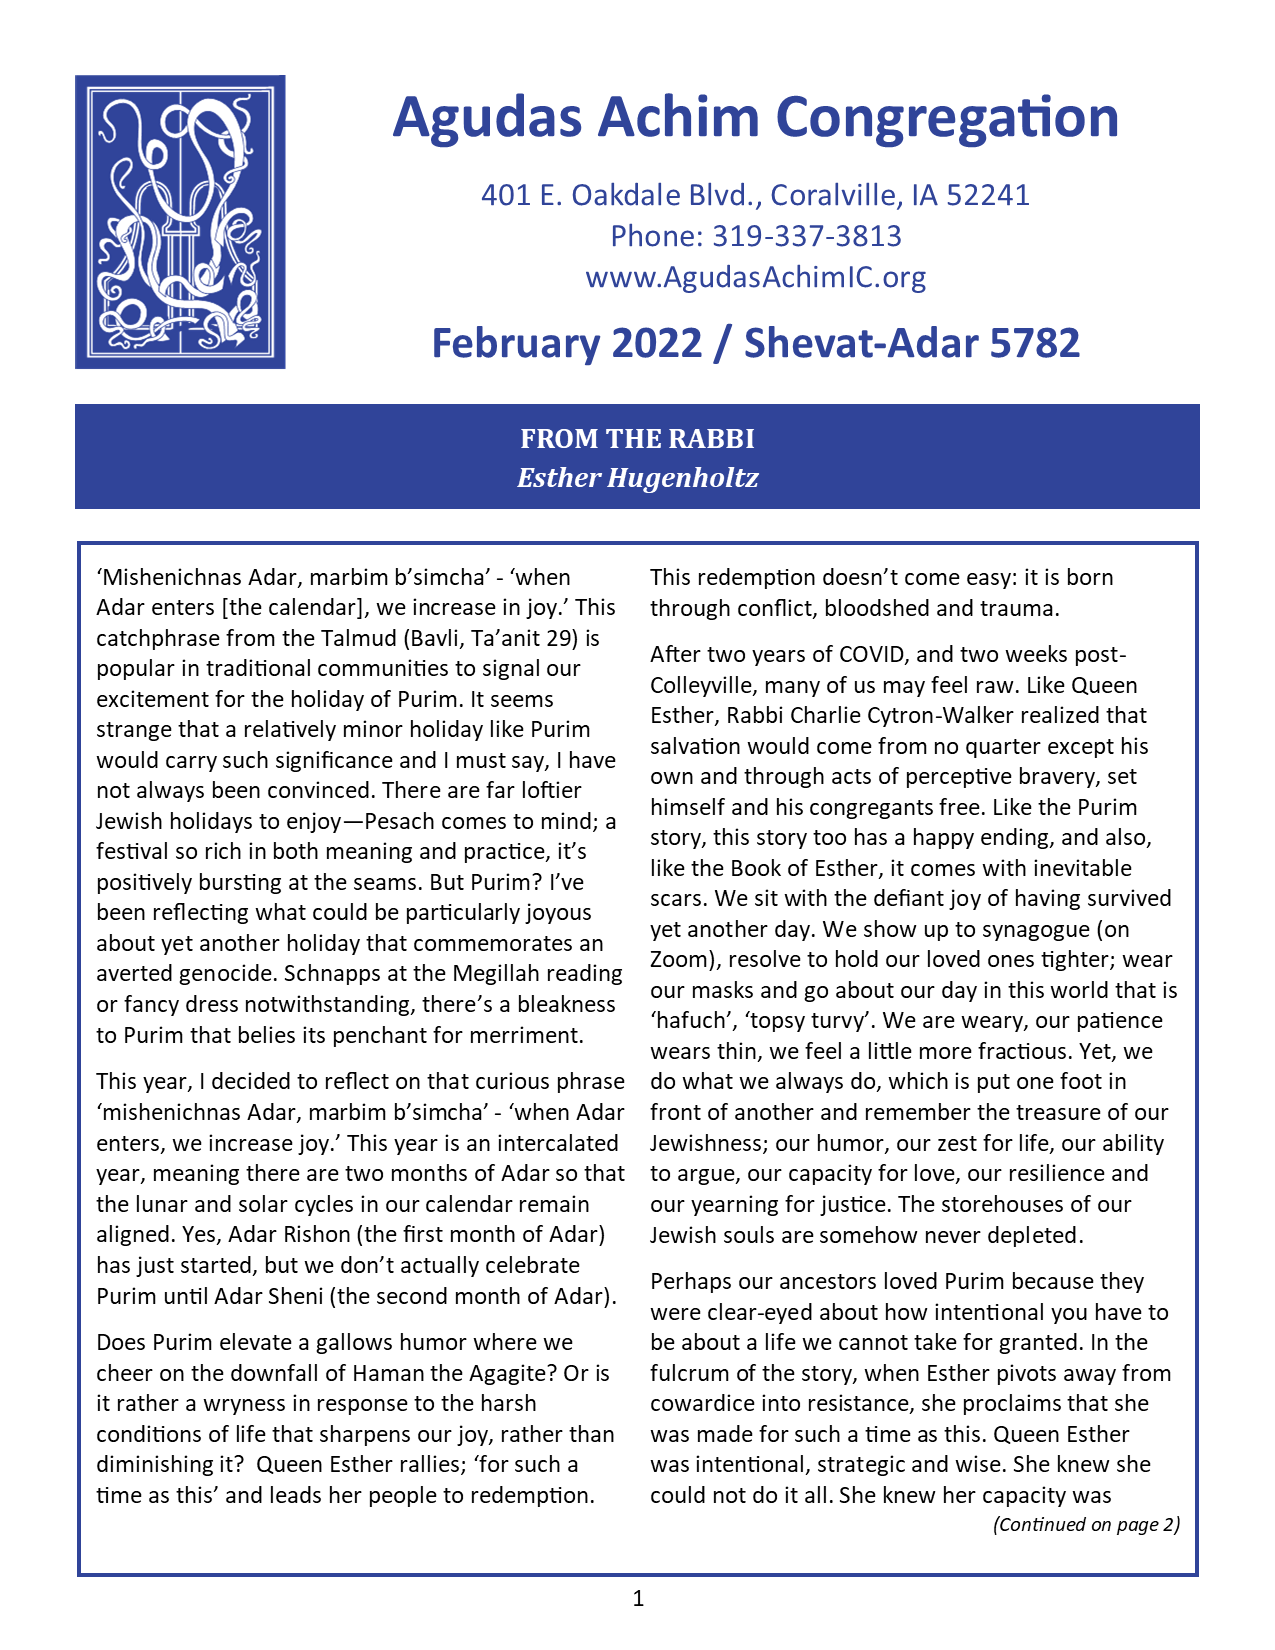 February 2022 Bulletin Cover